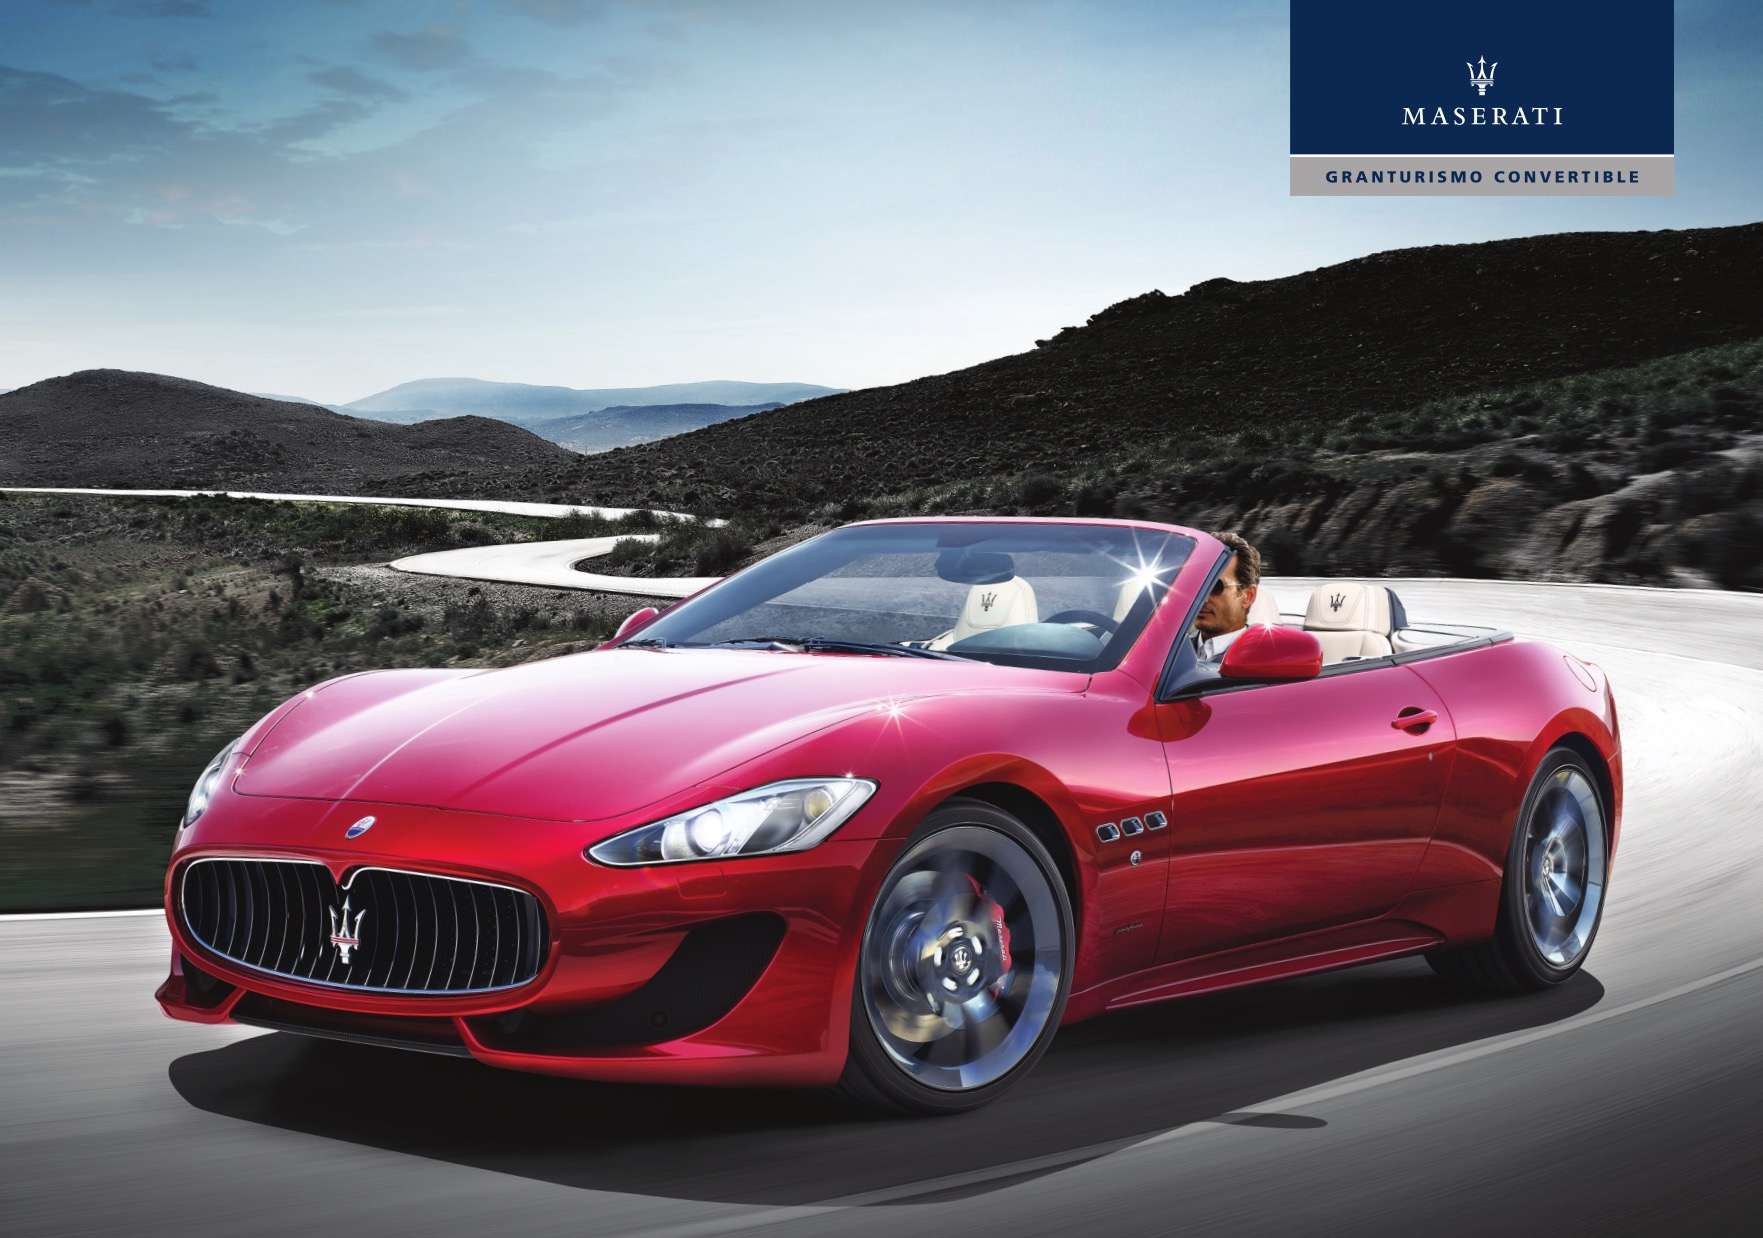 Maserati Granturismo Convertible Brochure